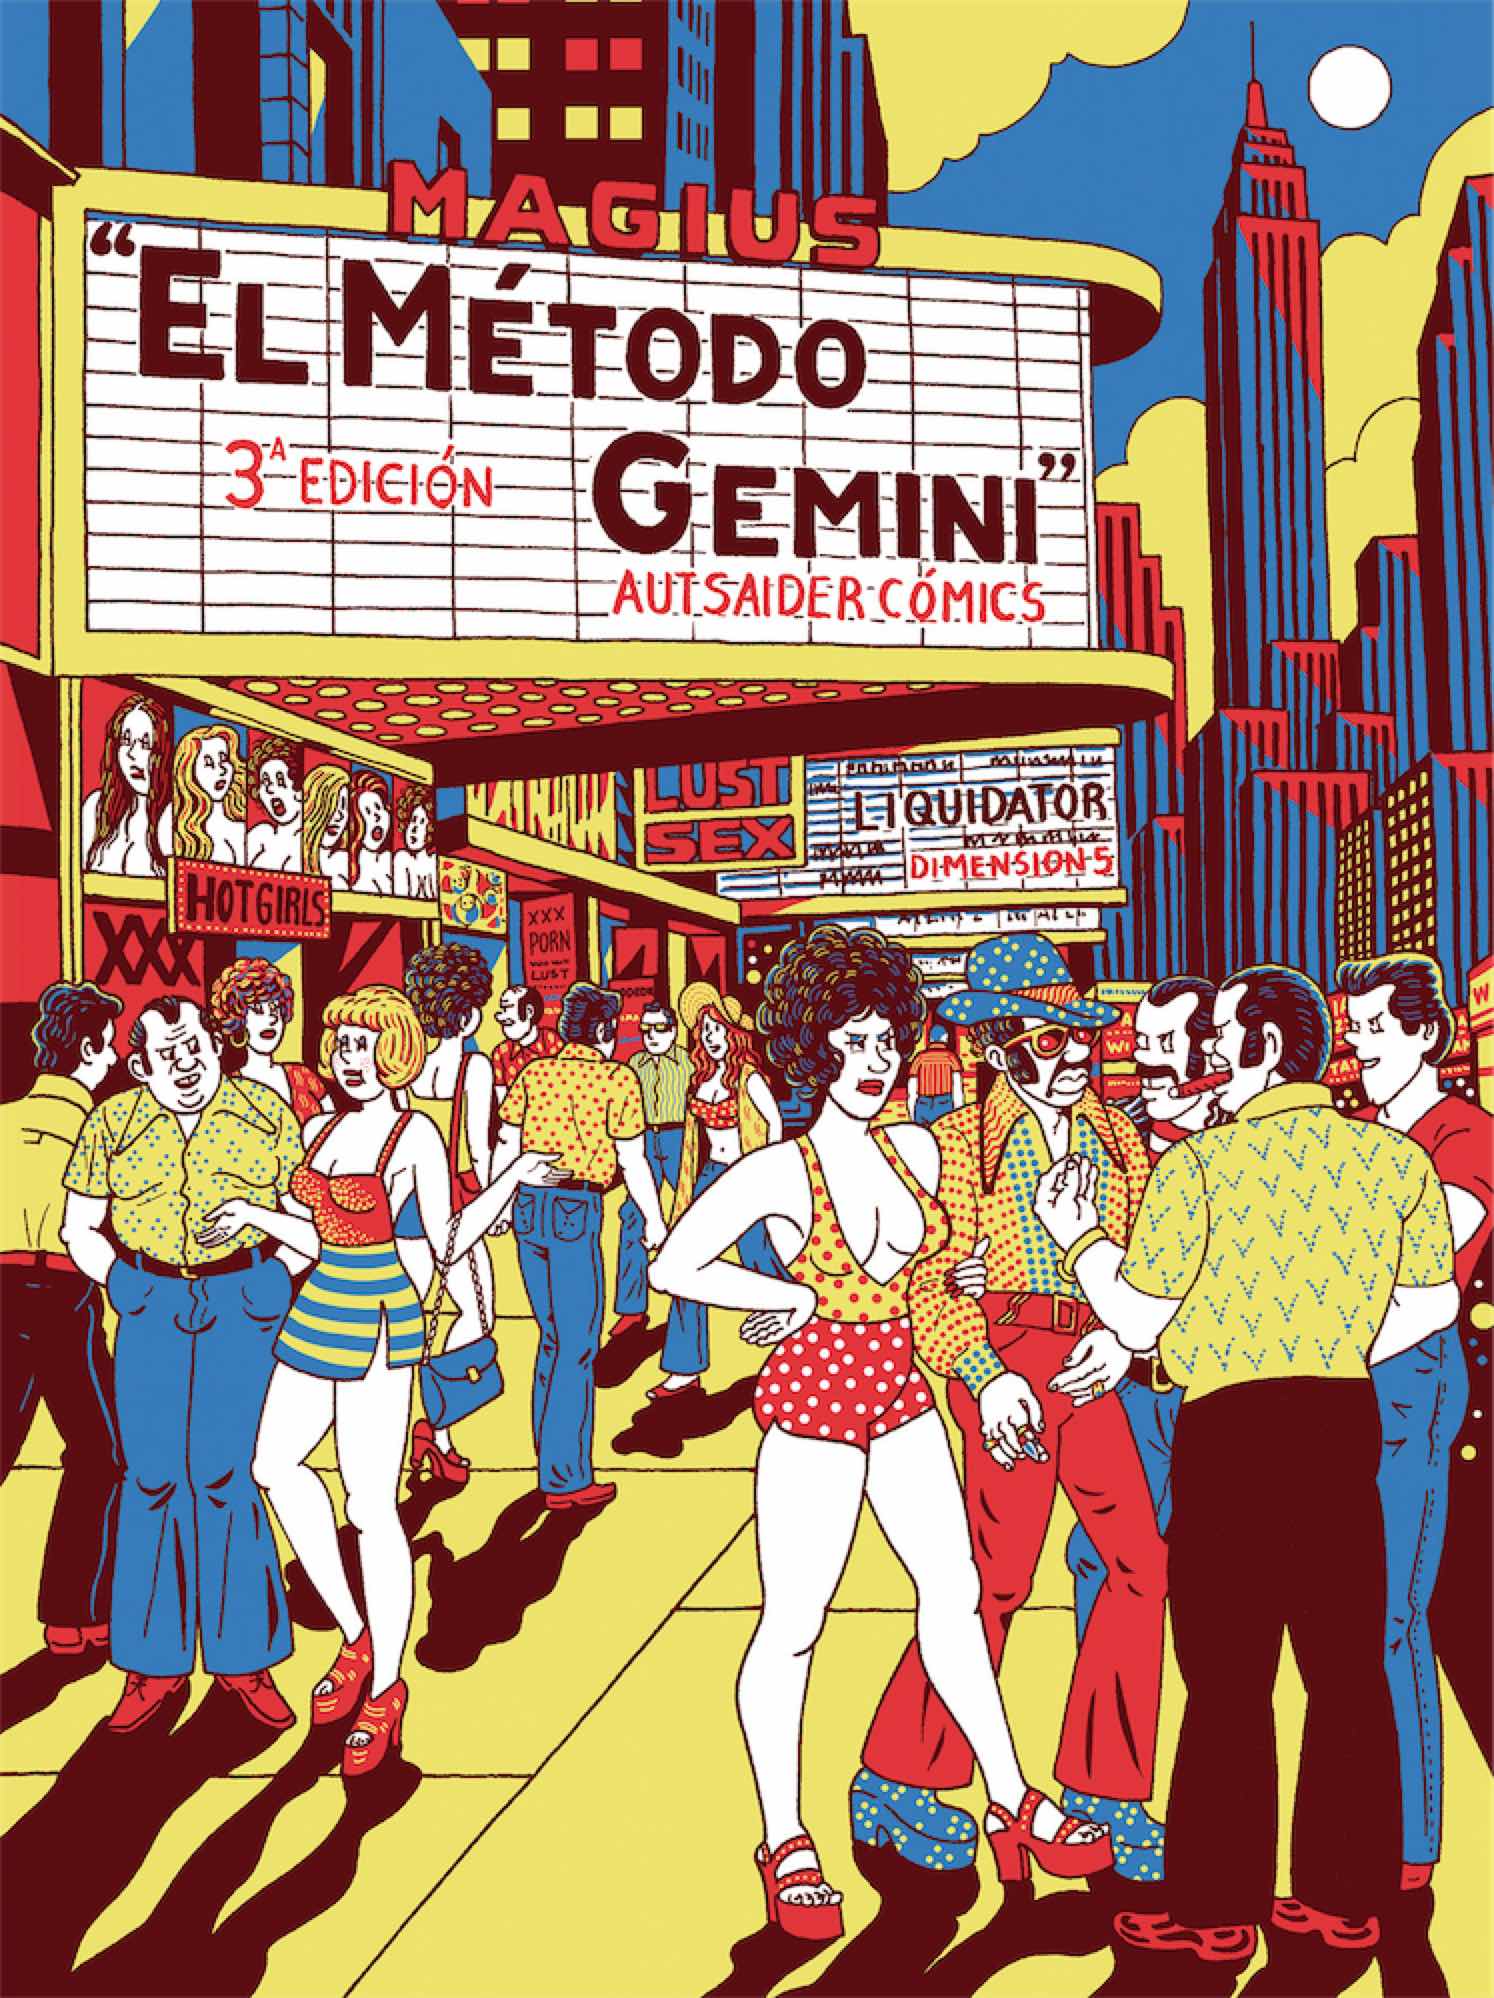 EL METODO GEMINI (3ª EDICION)